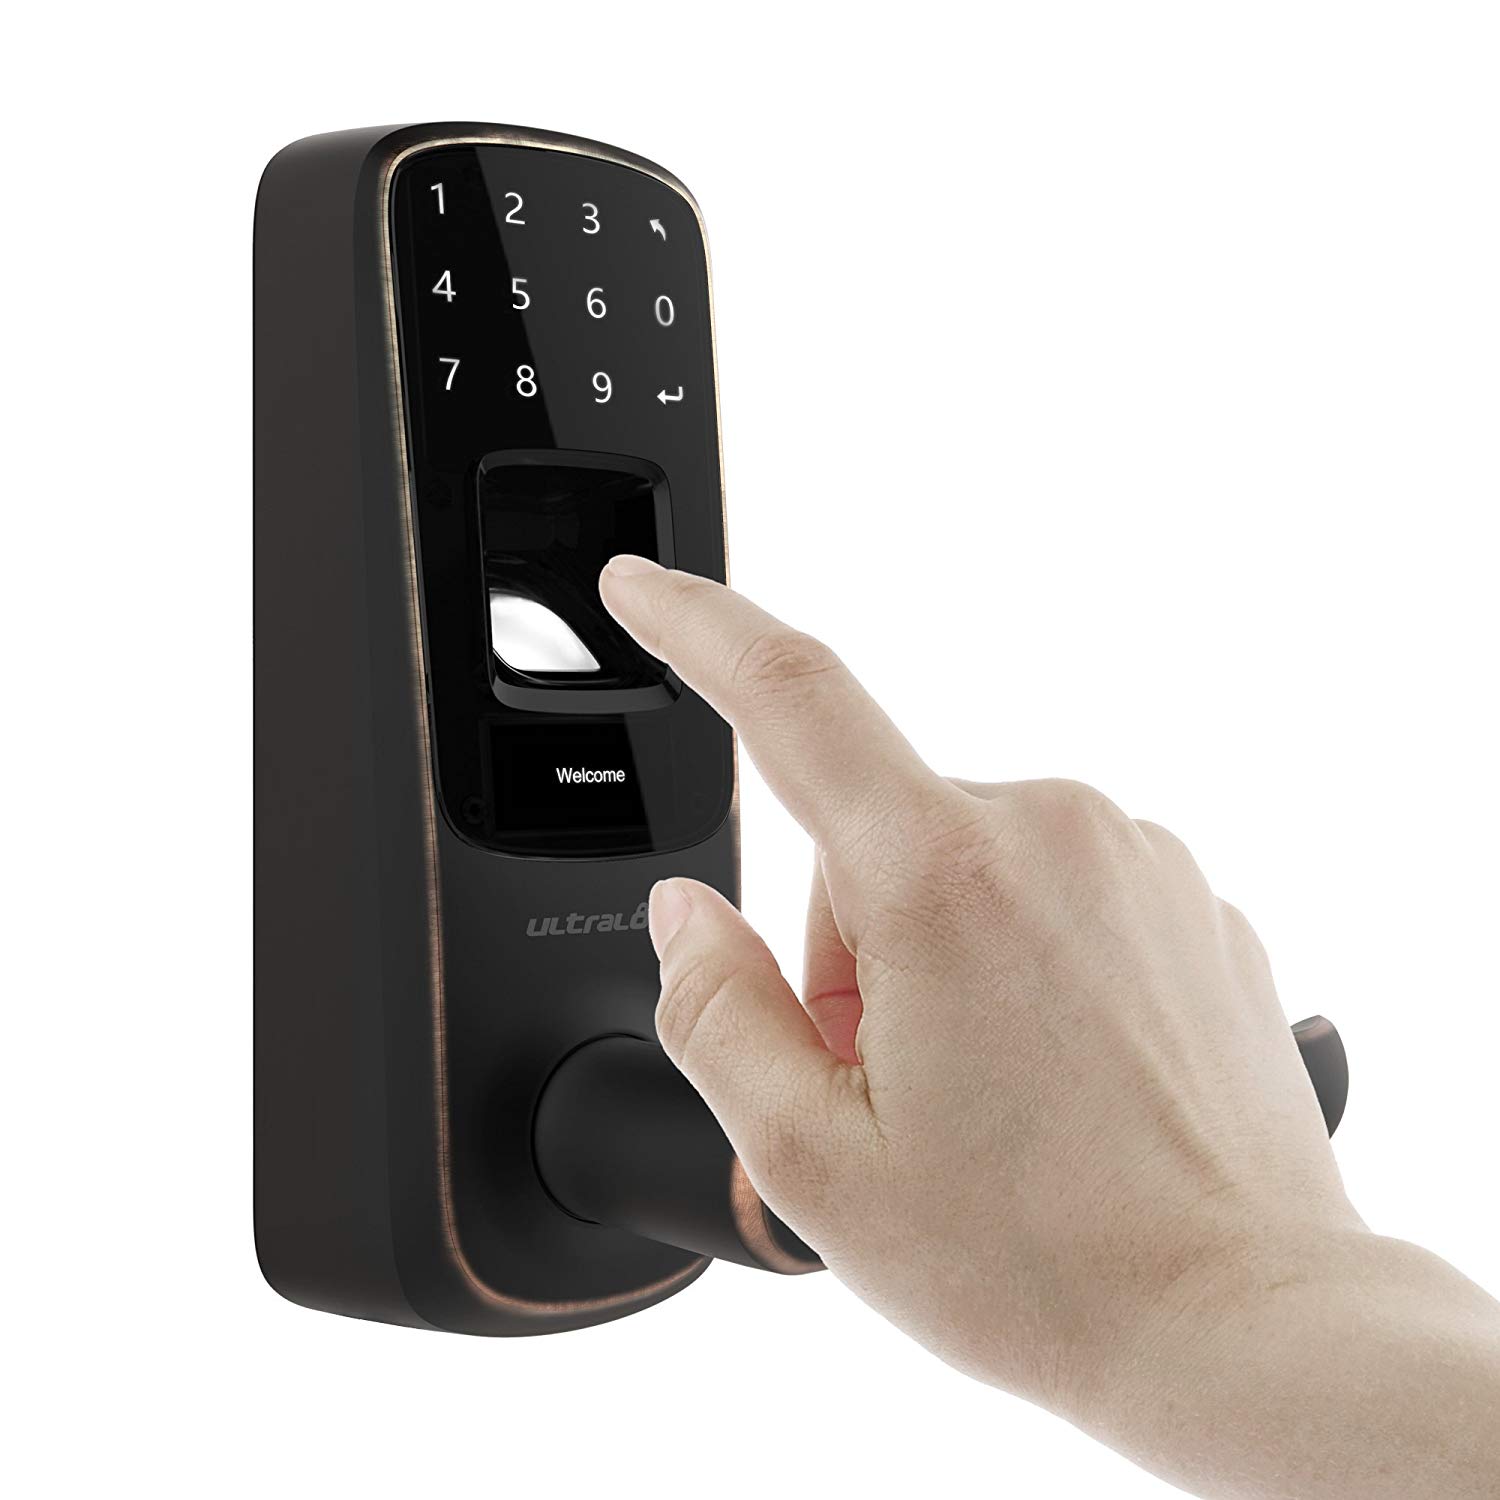 U-tec Ultraloq UL3 BT Bluetooth-fähiges Fingerabdruck- und Touchscreen-Smart-Schloss (Altbronze)